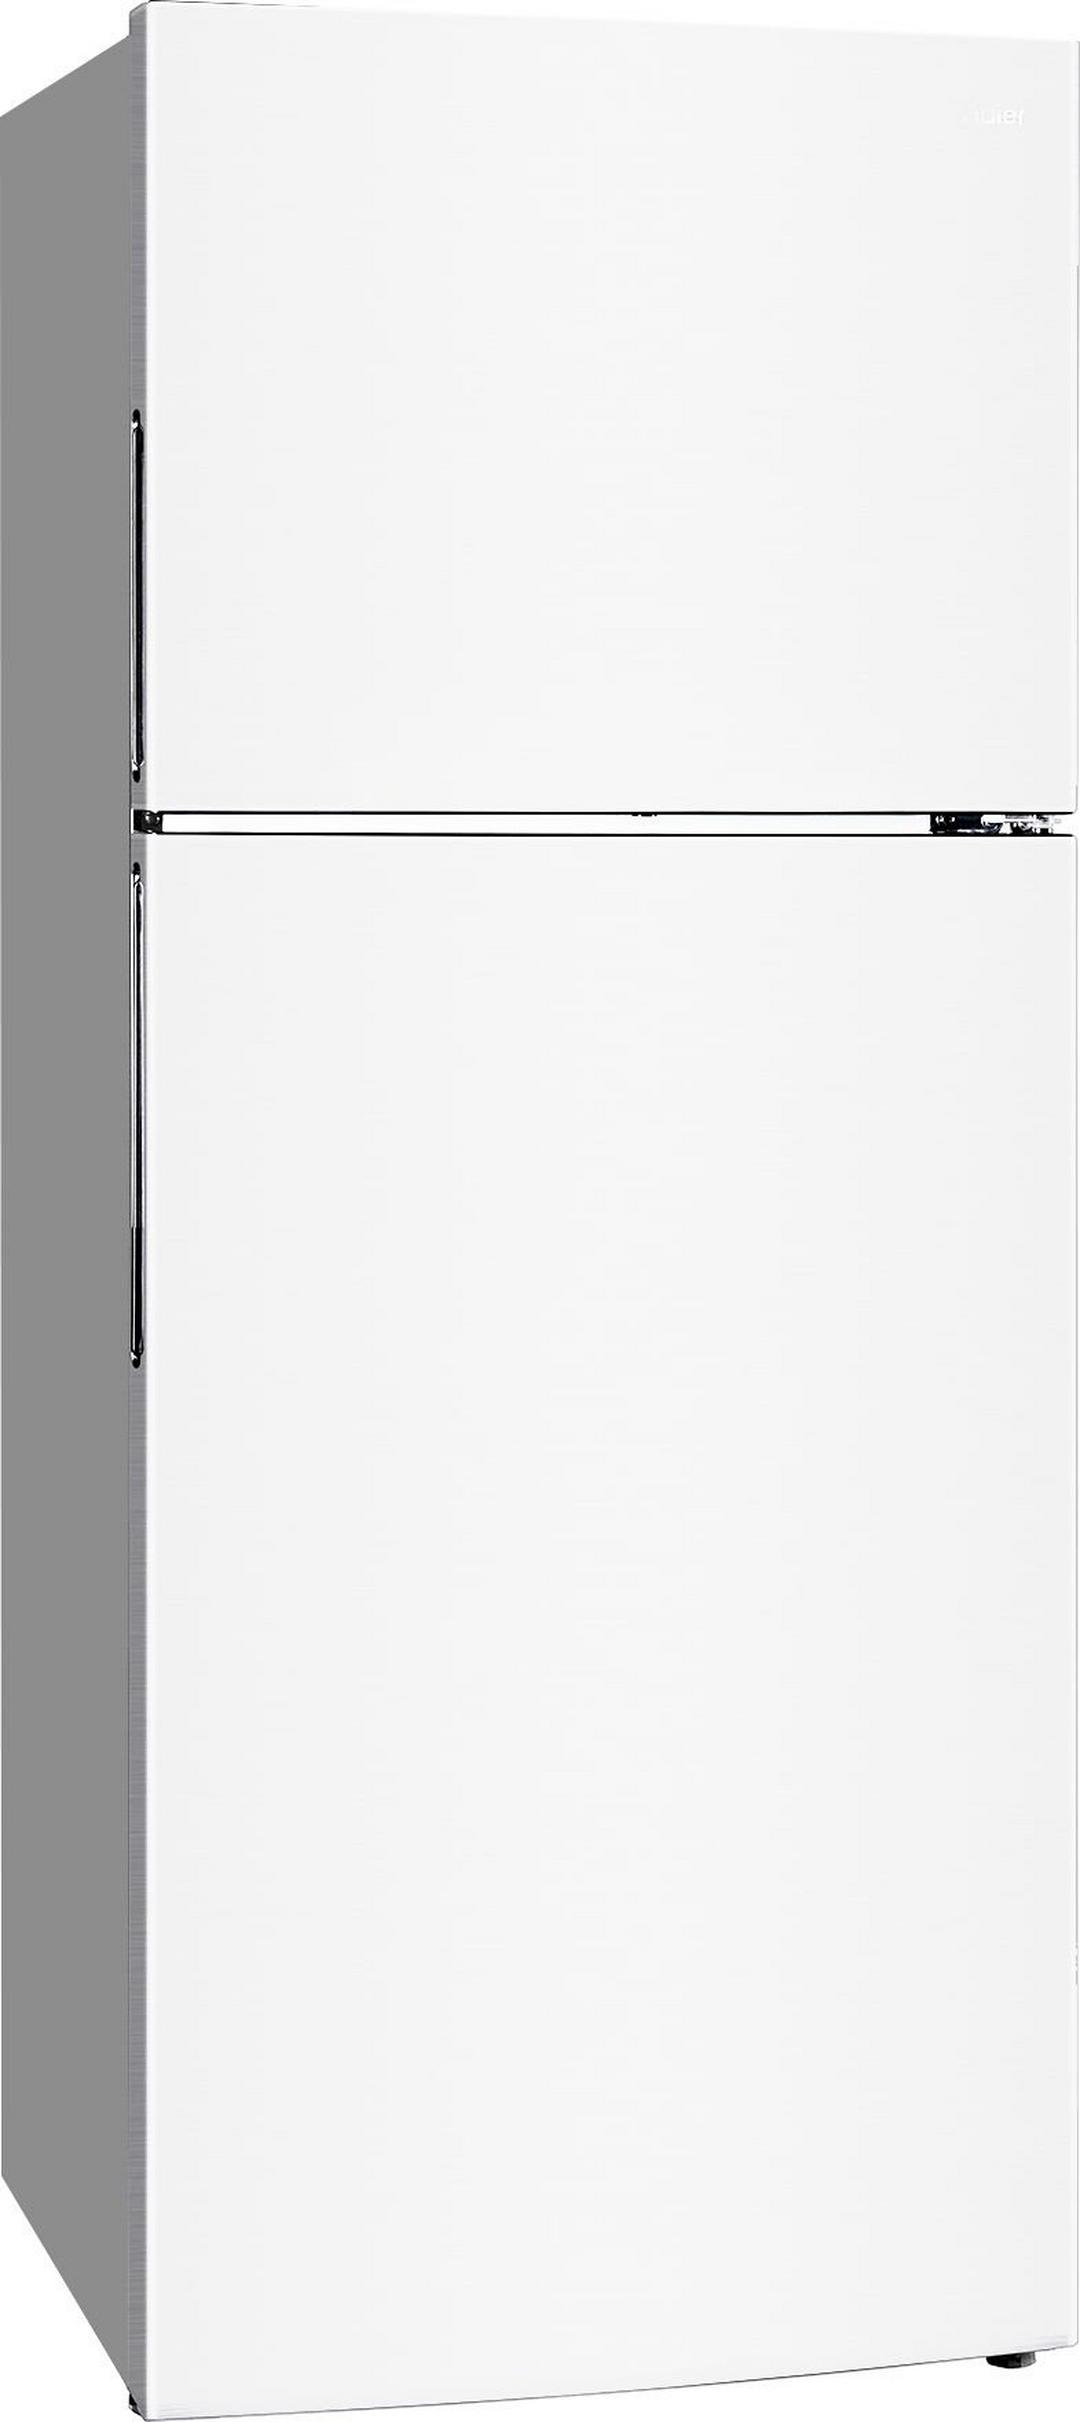 ثلاجة هاير بفريزر علوي سعة ٢٠ قدم - أبيض (HRF-580-WW)